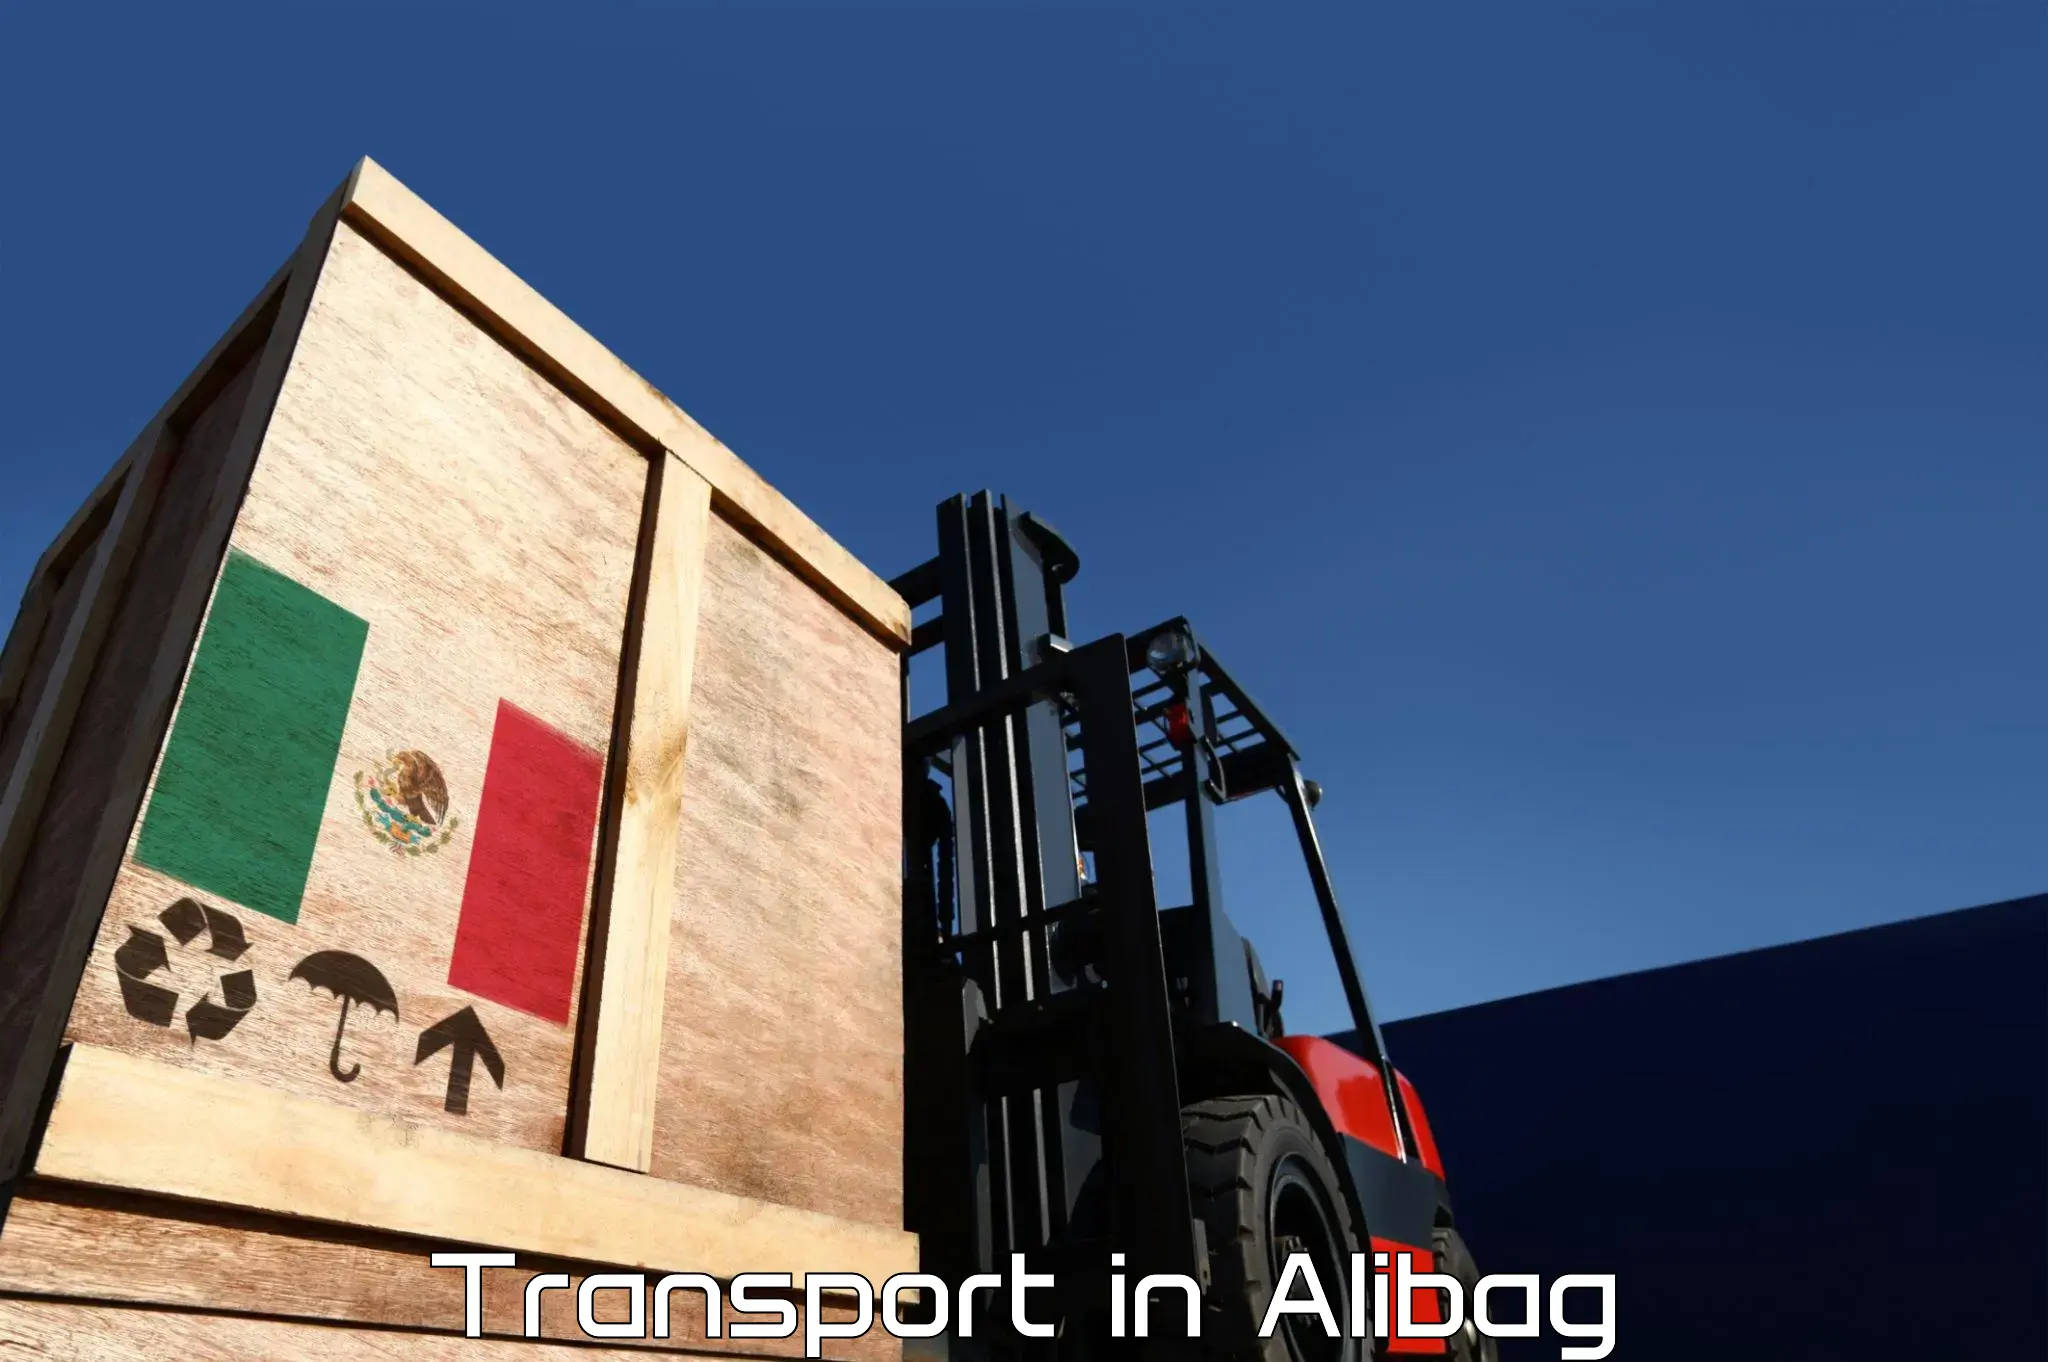 Furniture transport service in Alibag